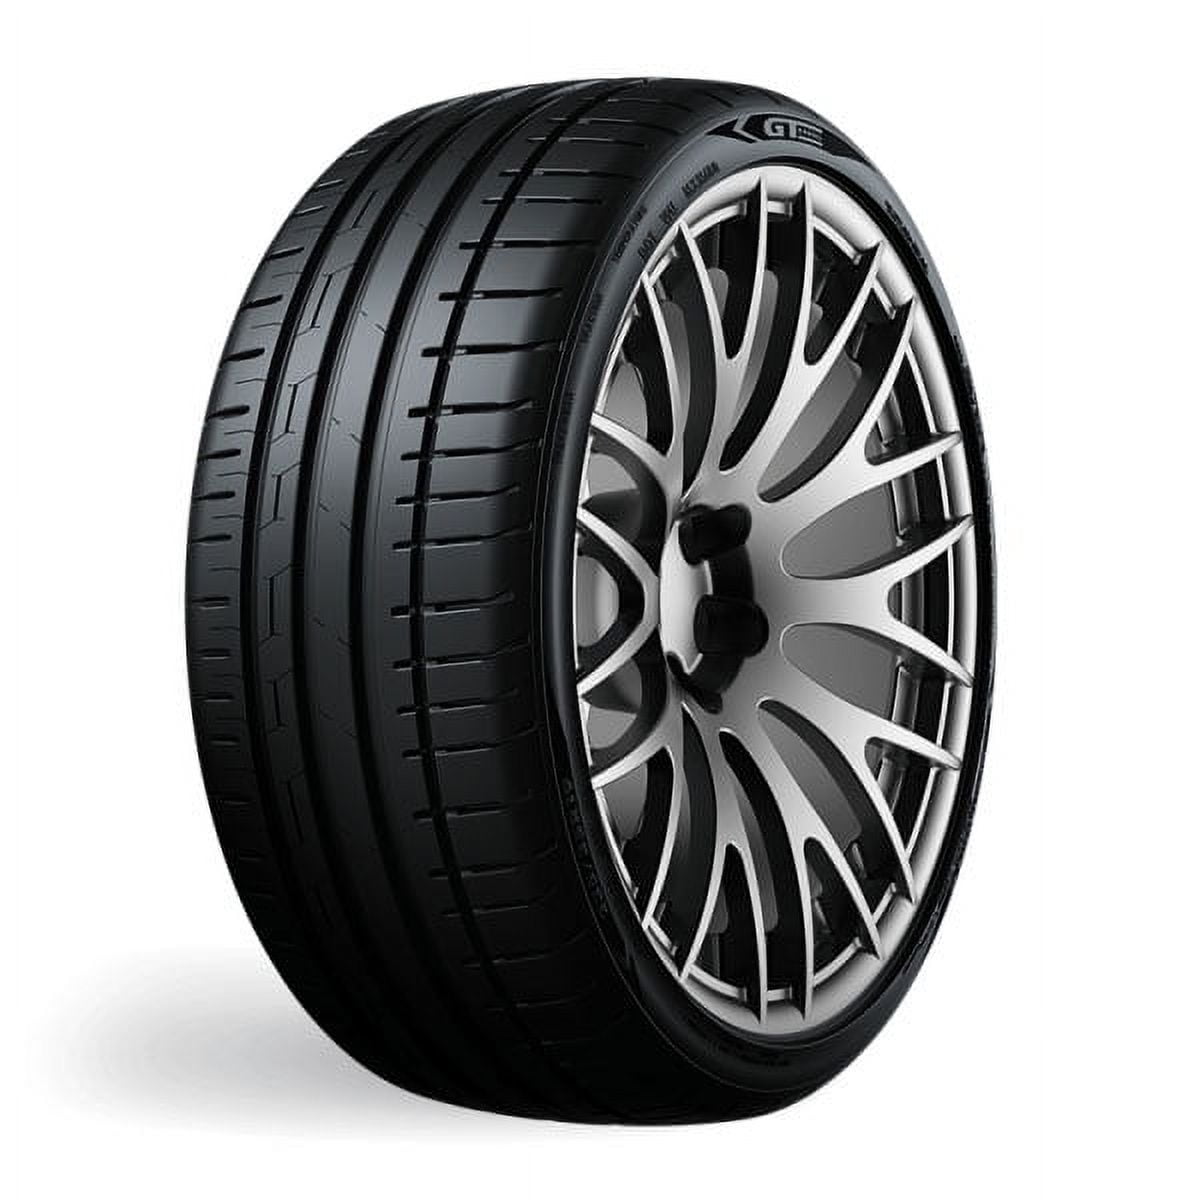 Goodyear Cargo Ultra N 2 Tire Grip 118 225/75R16